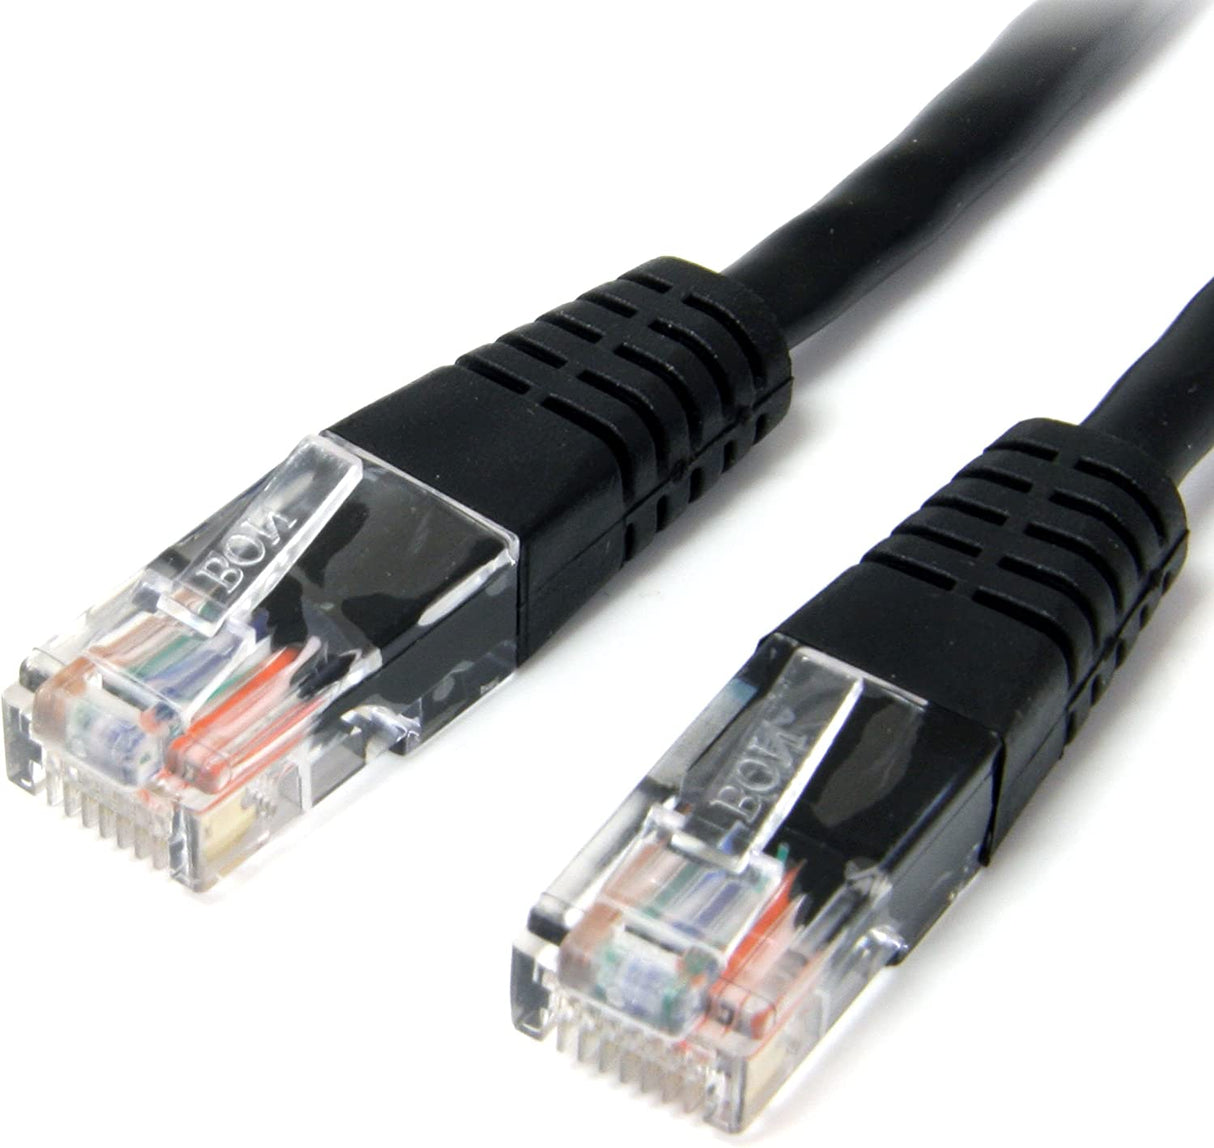 StarTech.com Cat5e Ethernet Cable - 10 ft - Black - Patch Cable - Molded Cat5e Cable - Network Cable - Ethernet Cord - Cat 5e Cable - 10ft (M45PATCH10BK) 10 ft / 3m Black